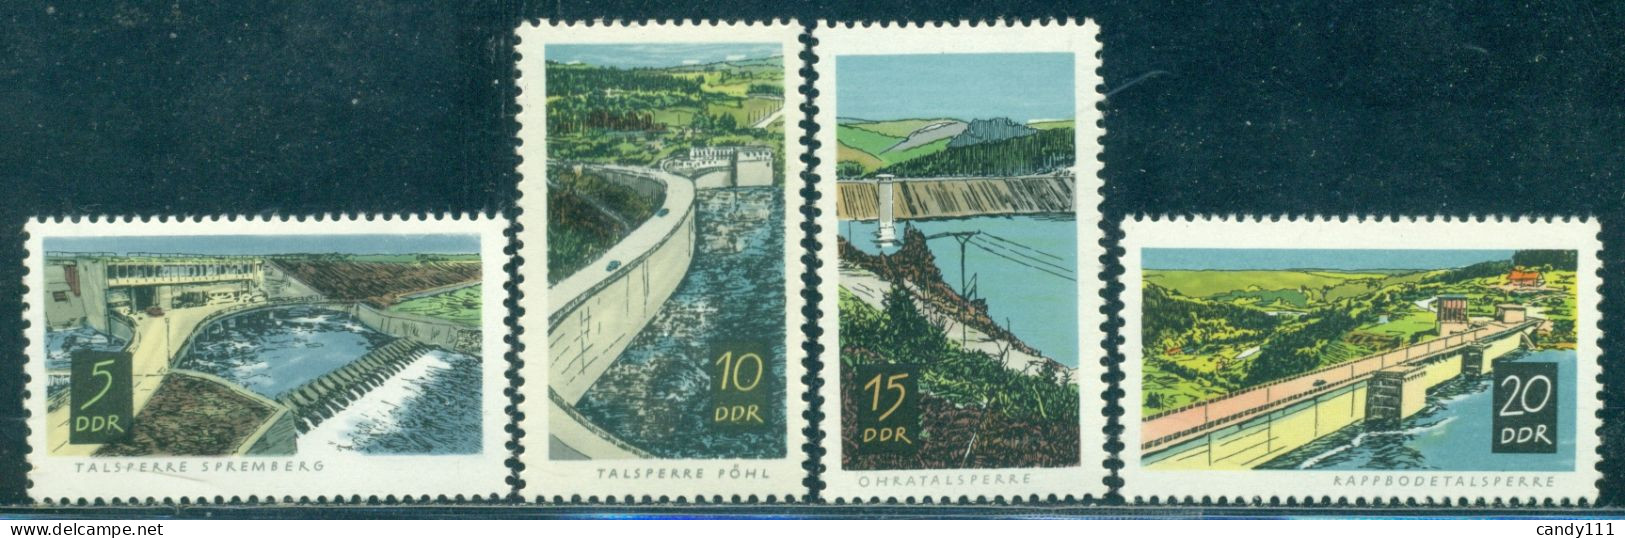 1968 Dam,Ohratalsperre,Ohratalsperre,drinking Water,DDR,1400,MNH - Wasser